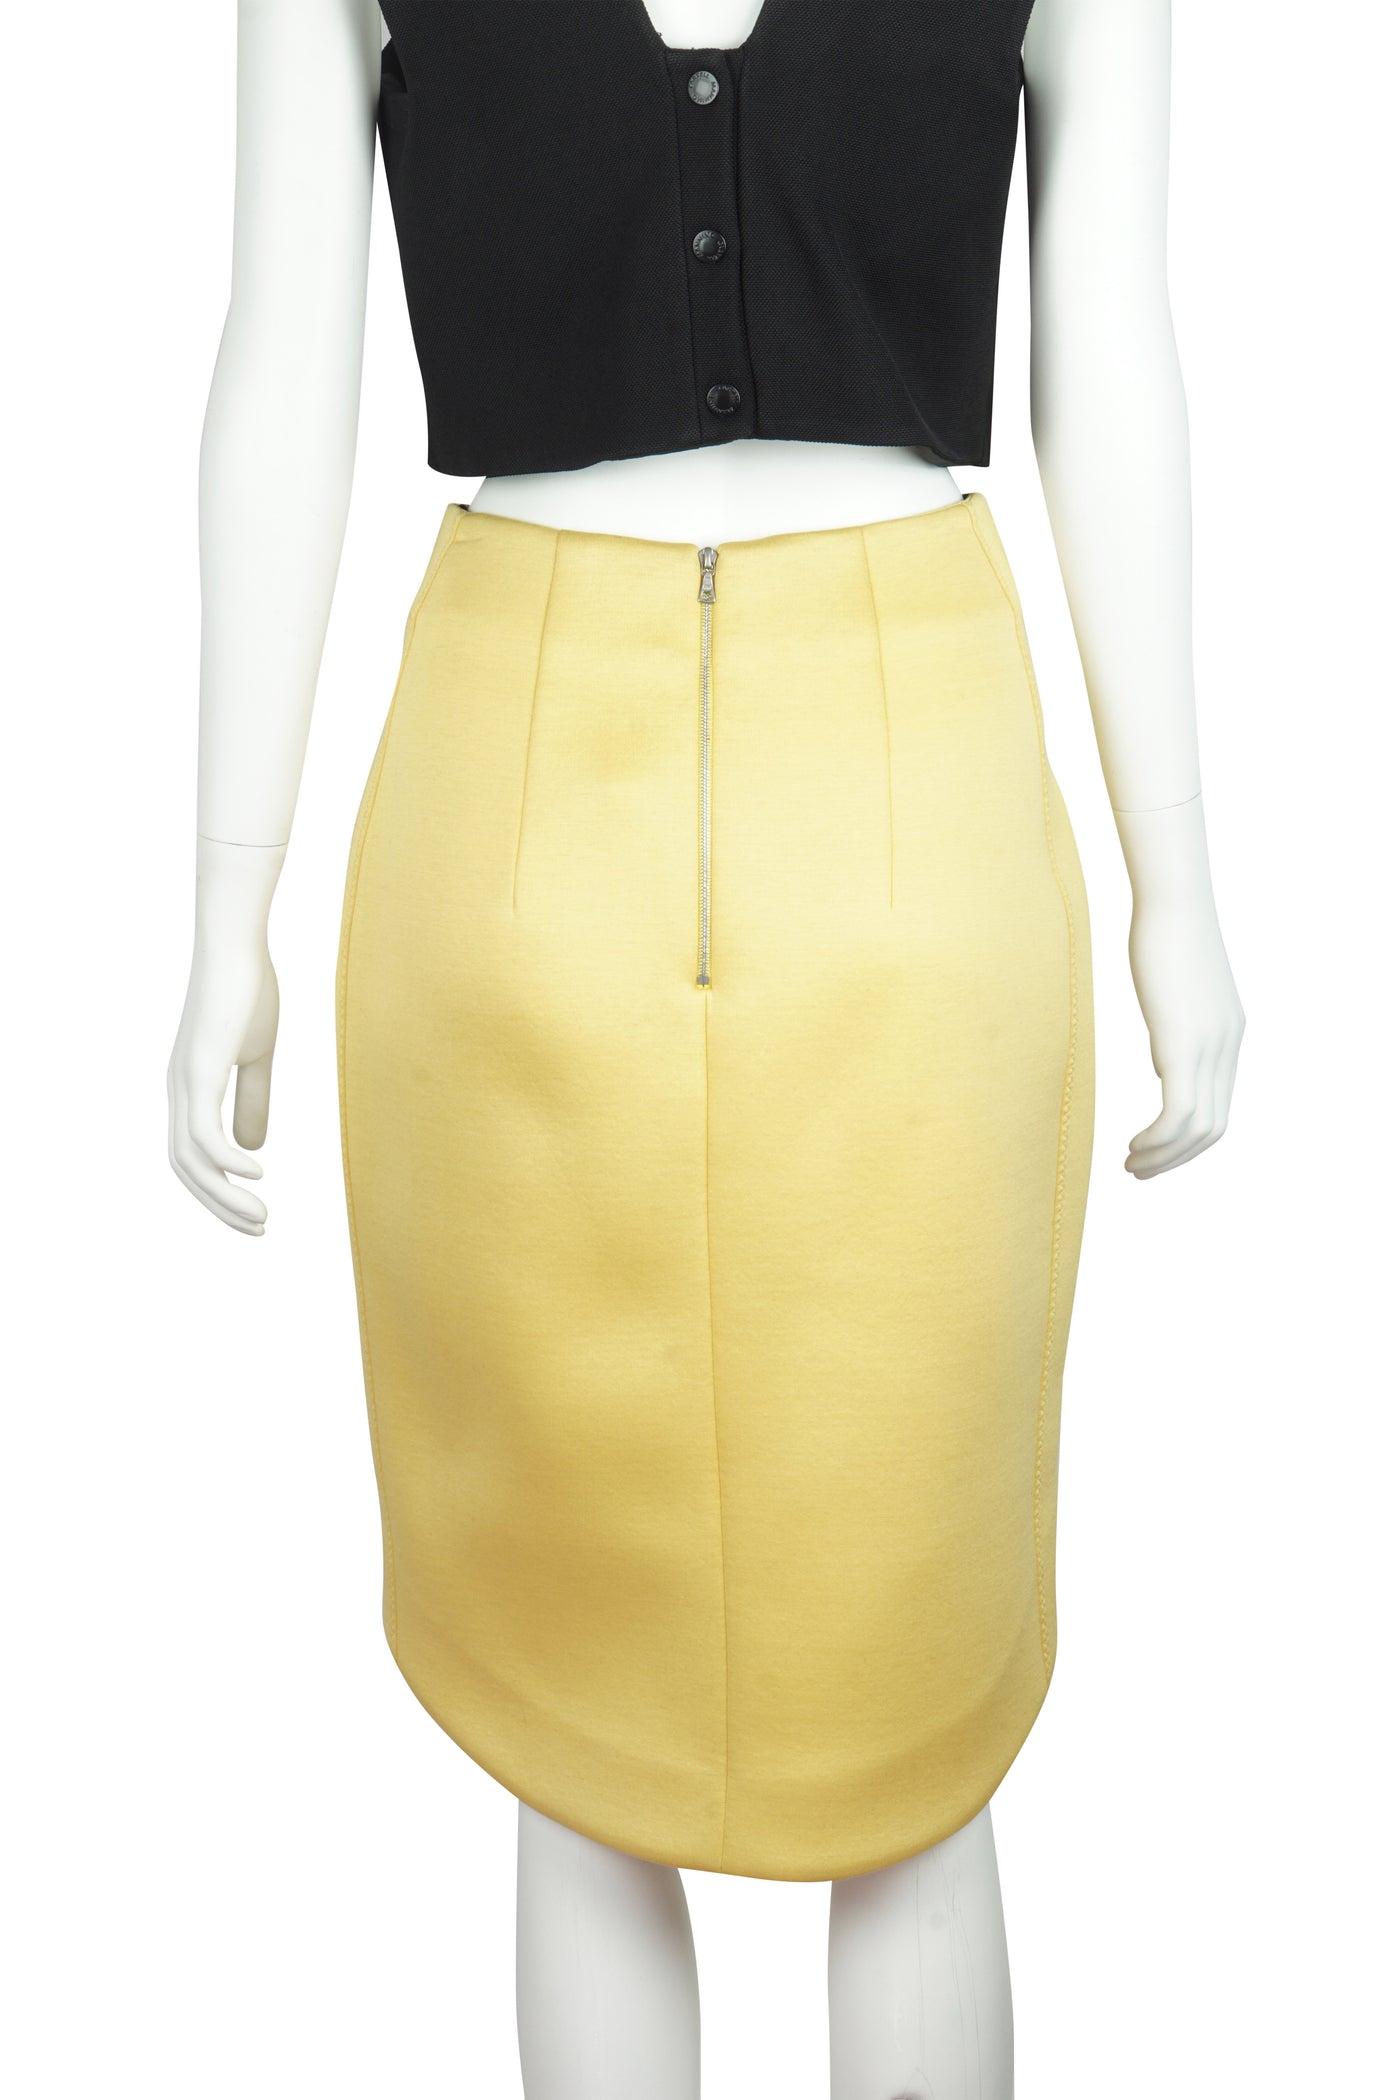 Cut away yellow scuba skirt